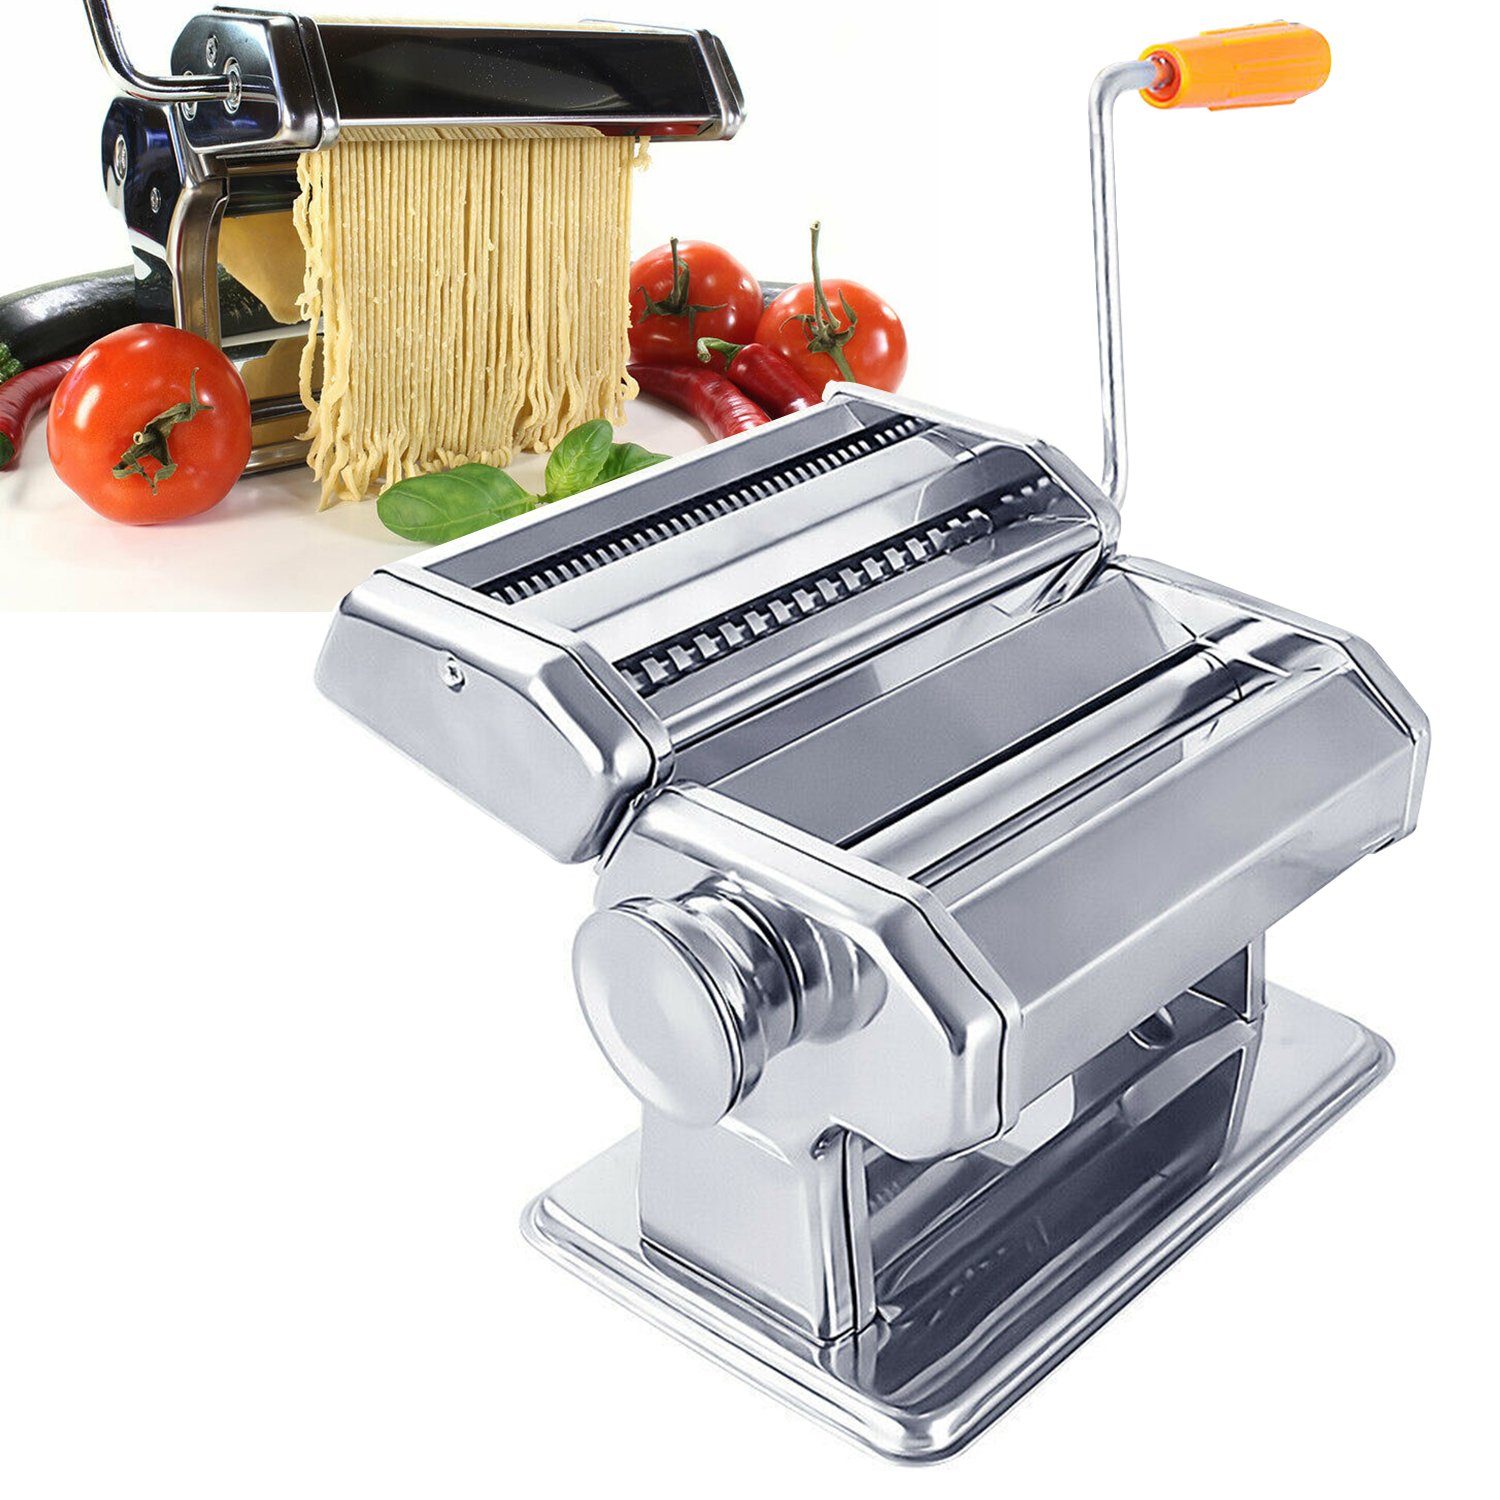 Clanmacy Nudelmaschine Edelstahl Pasta Maker, 7 Einstellbare Dicke,  Pastamaschine mit 2 Schneiden, für Spaghetti Lasagne Nudeln online kaufen |  OTTO